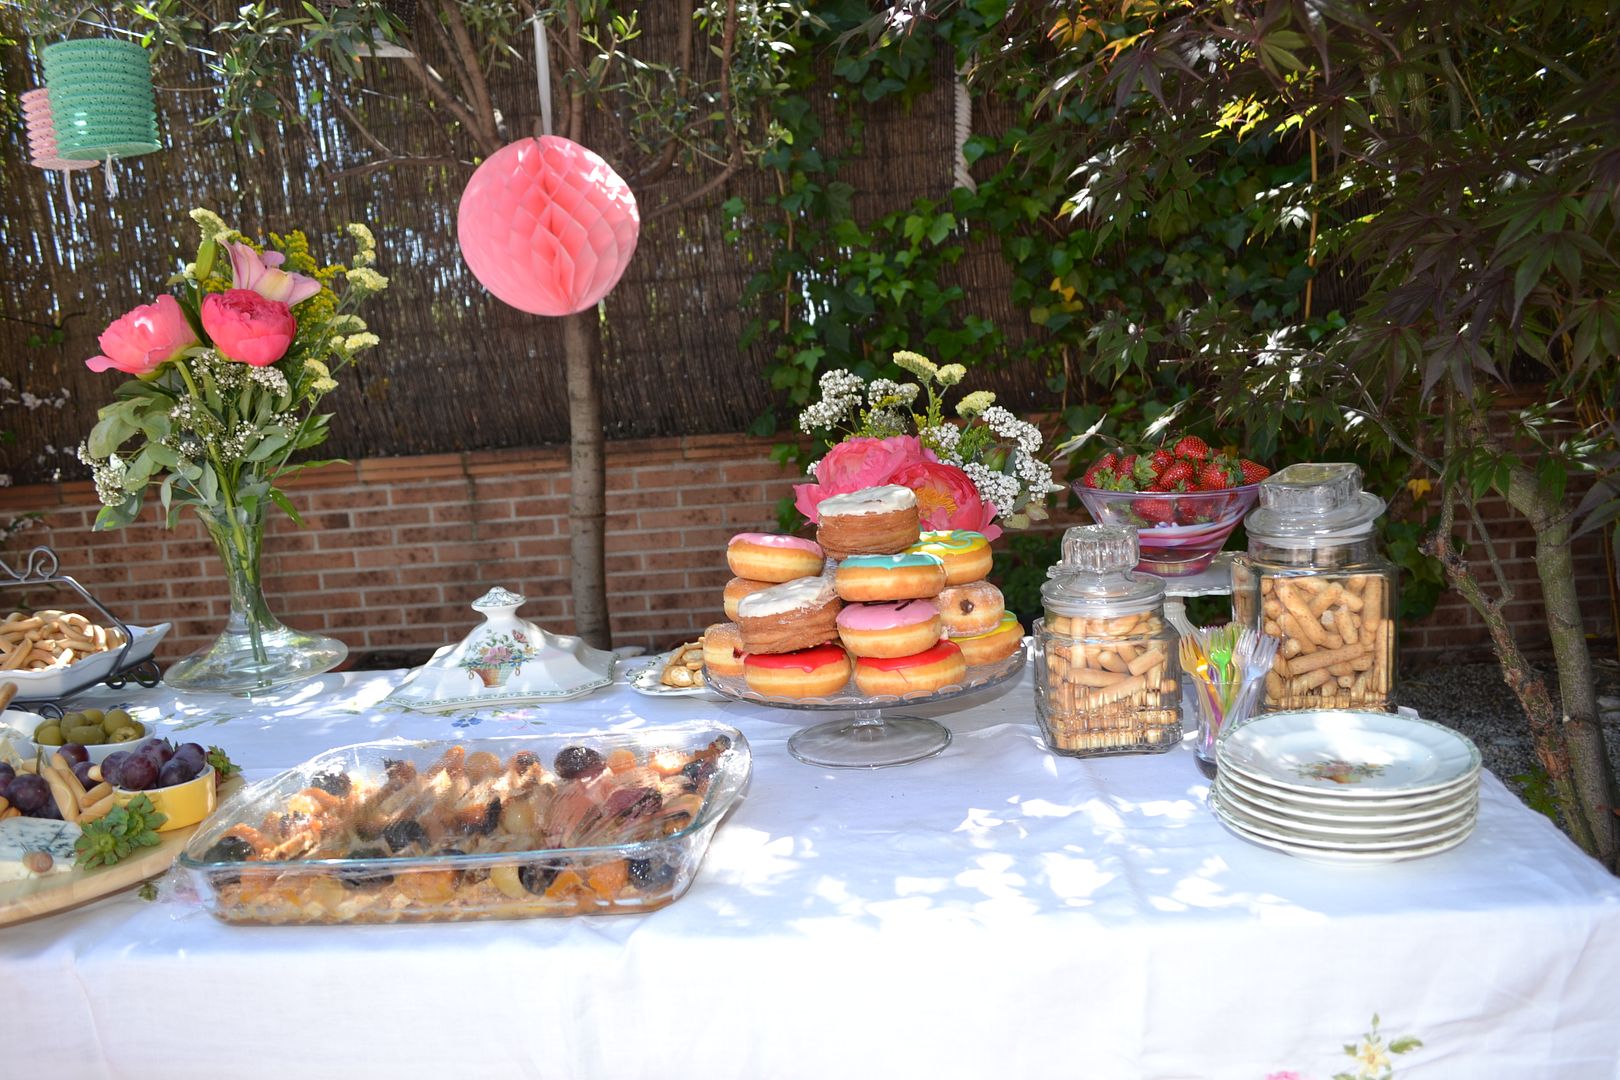  photo buffet-comida-celebracioacuten-terraza-jardiacuten-fiesta10_zpse38605c2.jpg